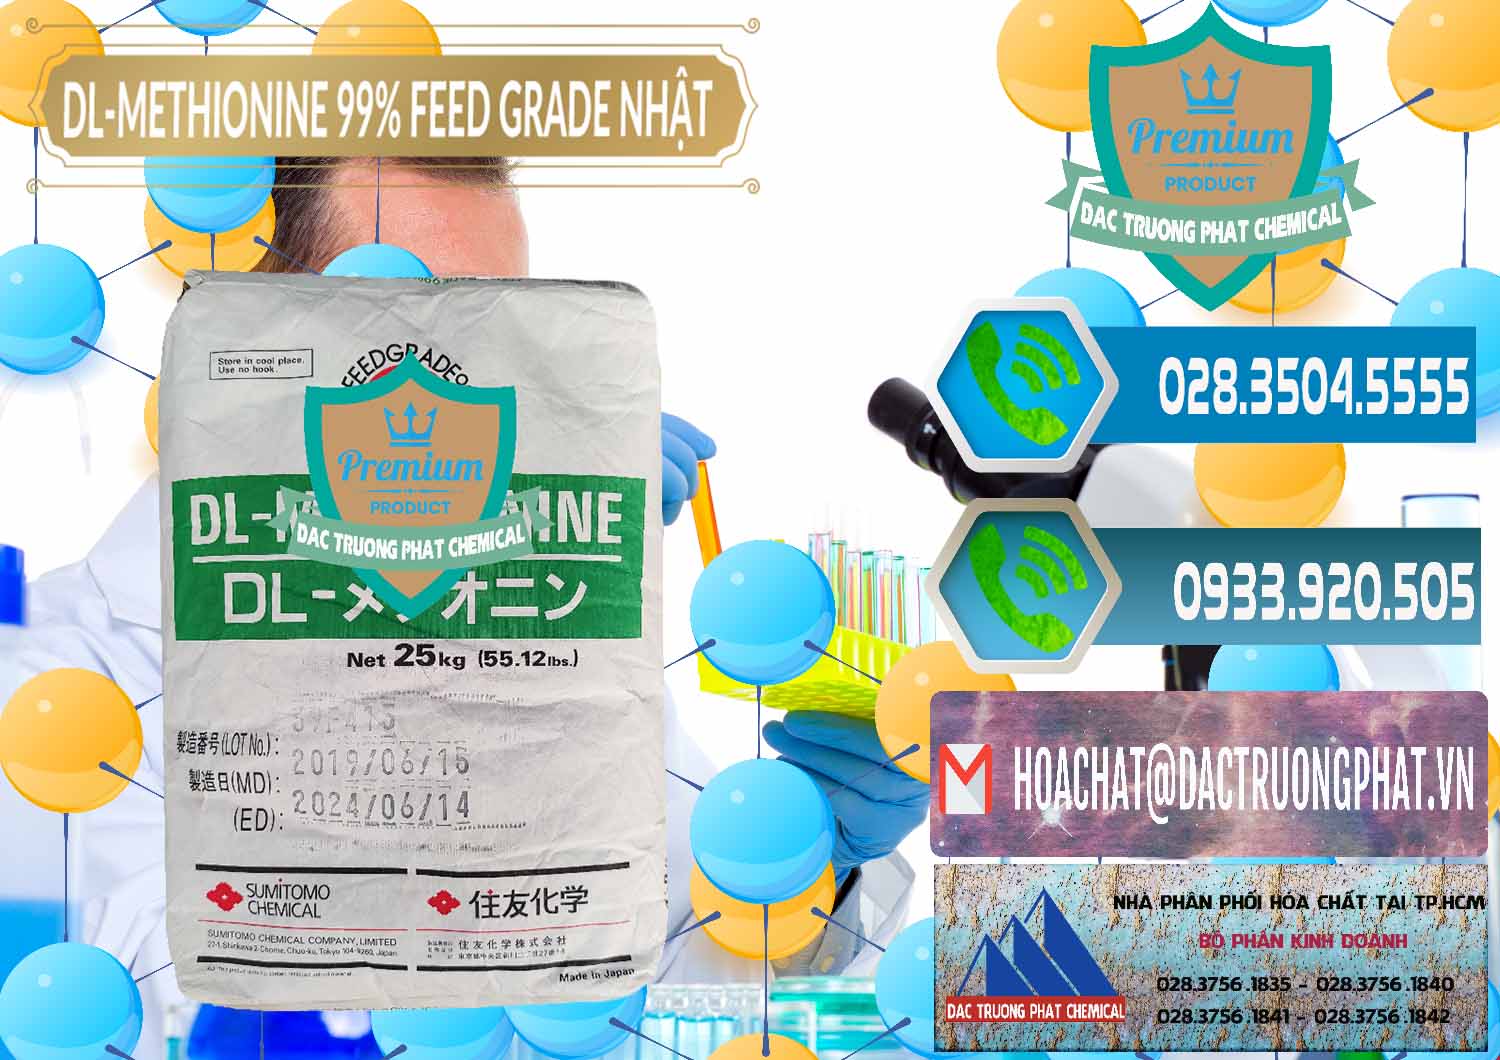 Công ty chuyên kinh doanh và bán DL-Methionine - C5H11NO2S Feed Grade Sumitomo Nhật Bản Japan - 0313 - Nơi chuyên phân phối và kinh doanh hóa chất tại TP.HCM - congtyhoachat.net